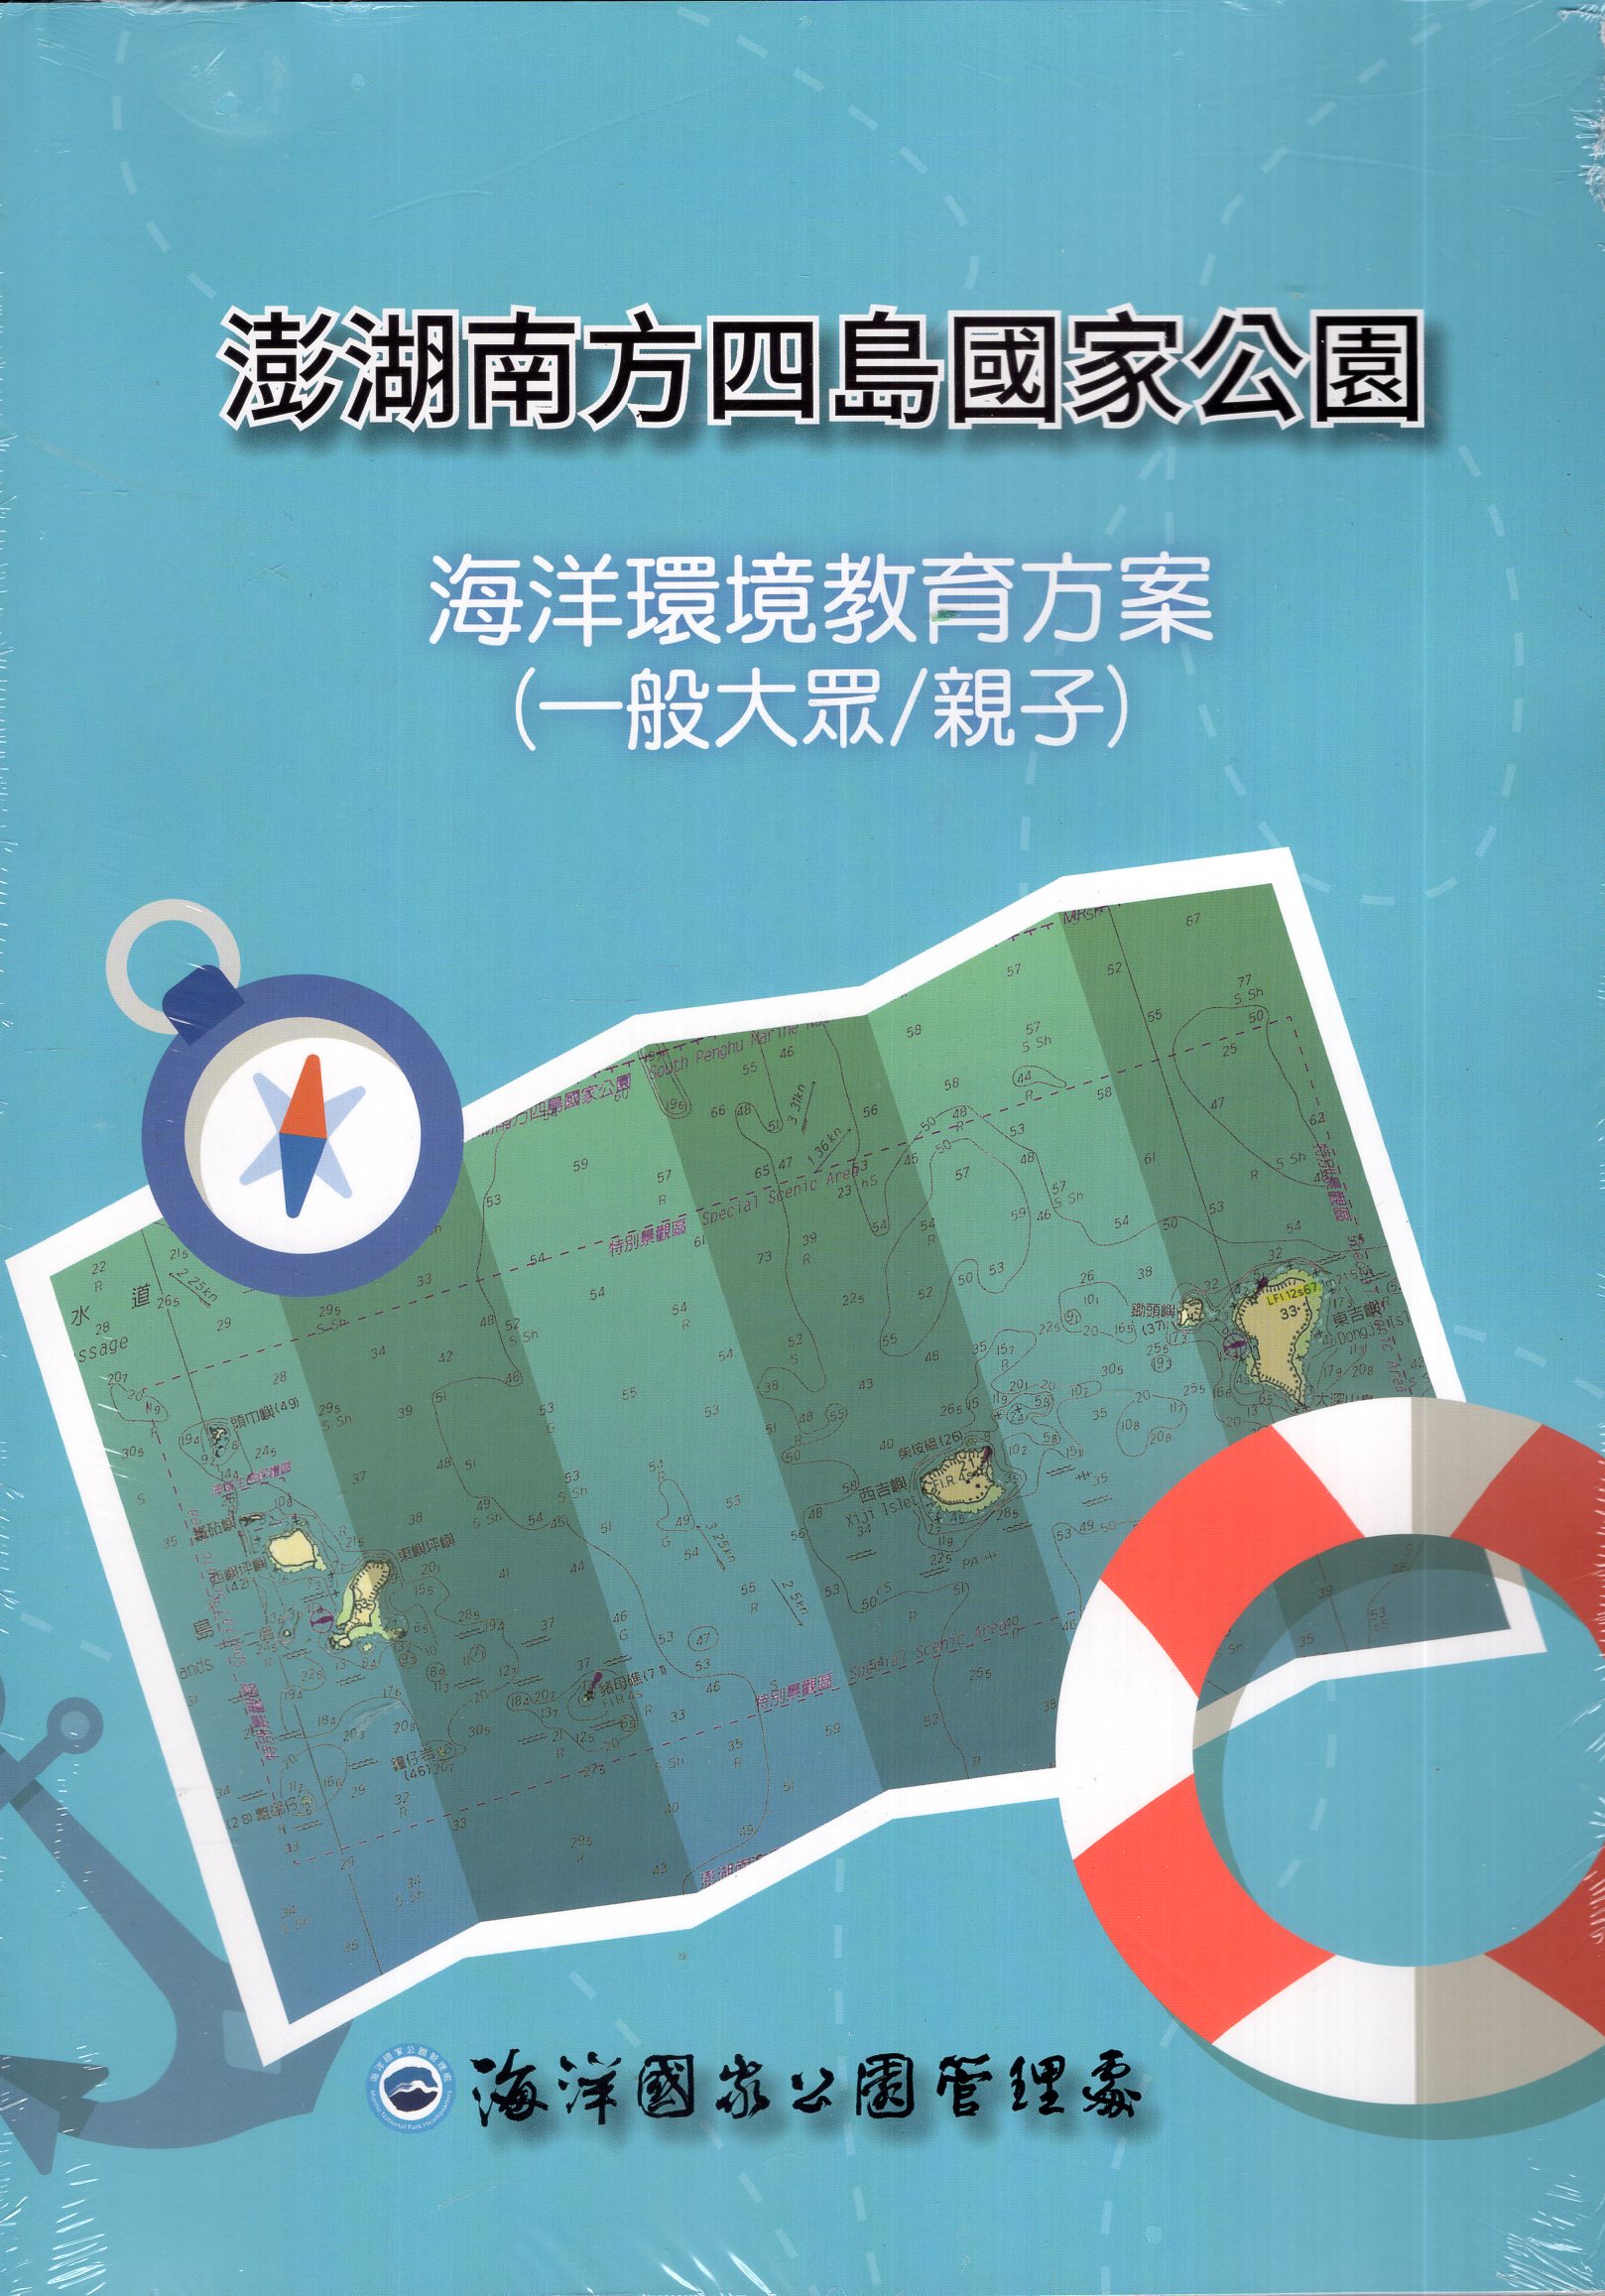 《澎湖南方四島國家公園海洋環境教育方案(一般大眾/親子)》封面